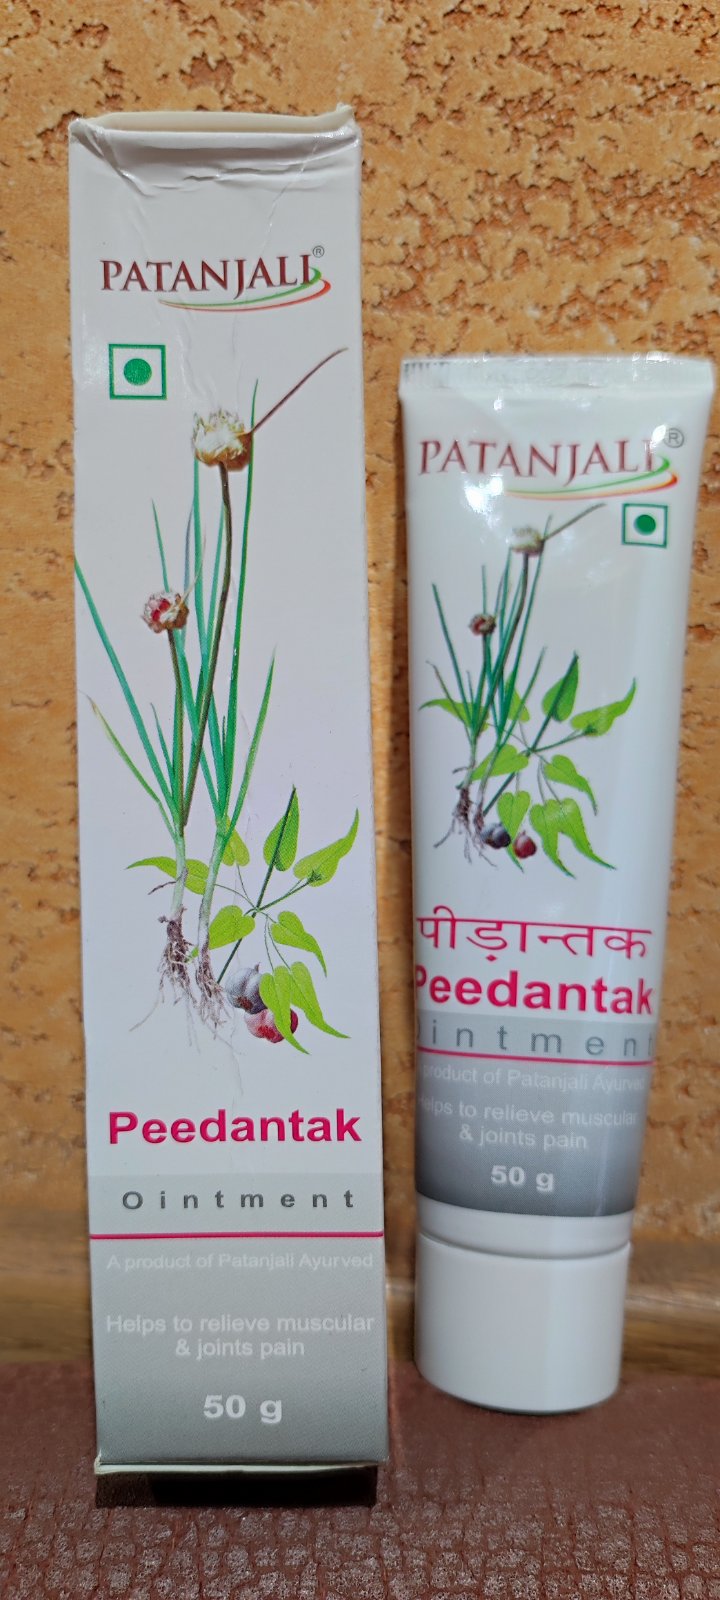 Peedantak cream 50гр Пидантак обезболивание, прогревание, позвоночник, суставы, мышцы, связки, Индия Patanjali